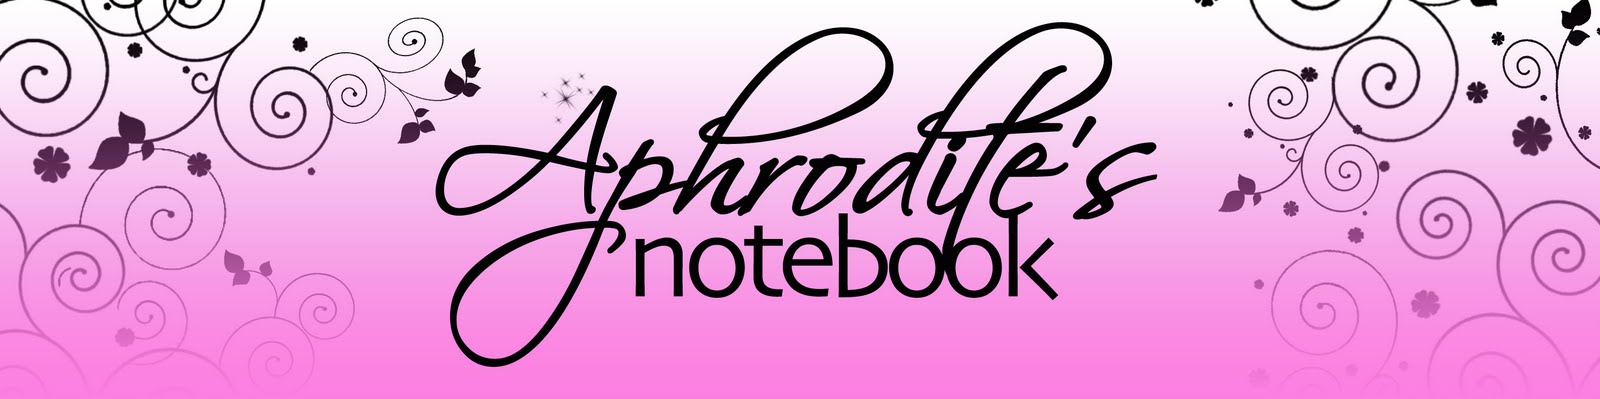 Aphrodite's Notebook